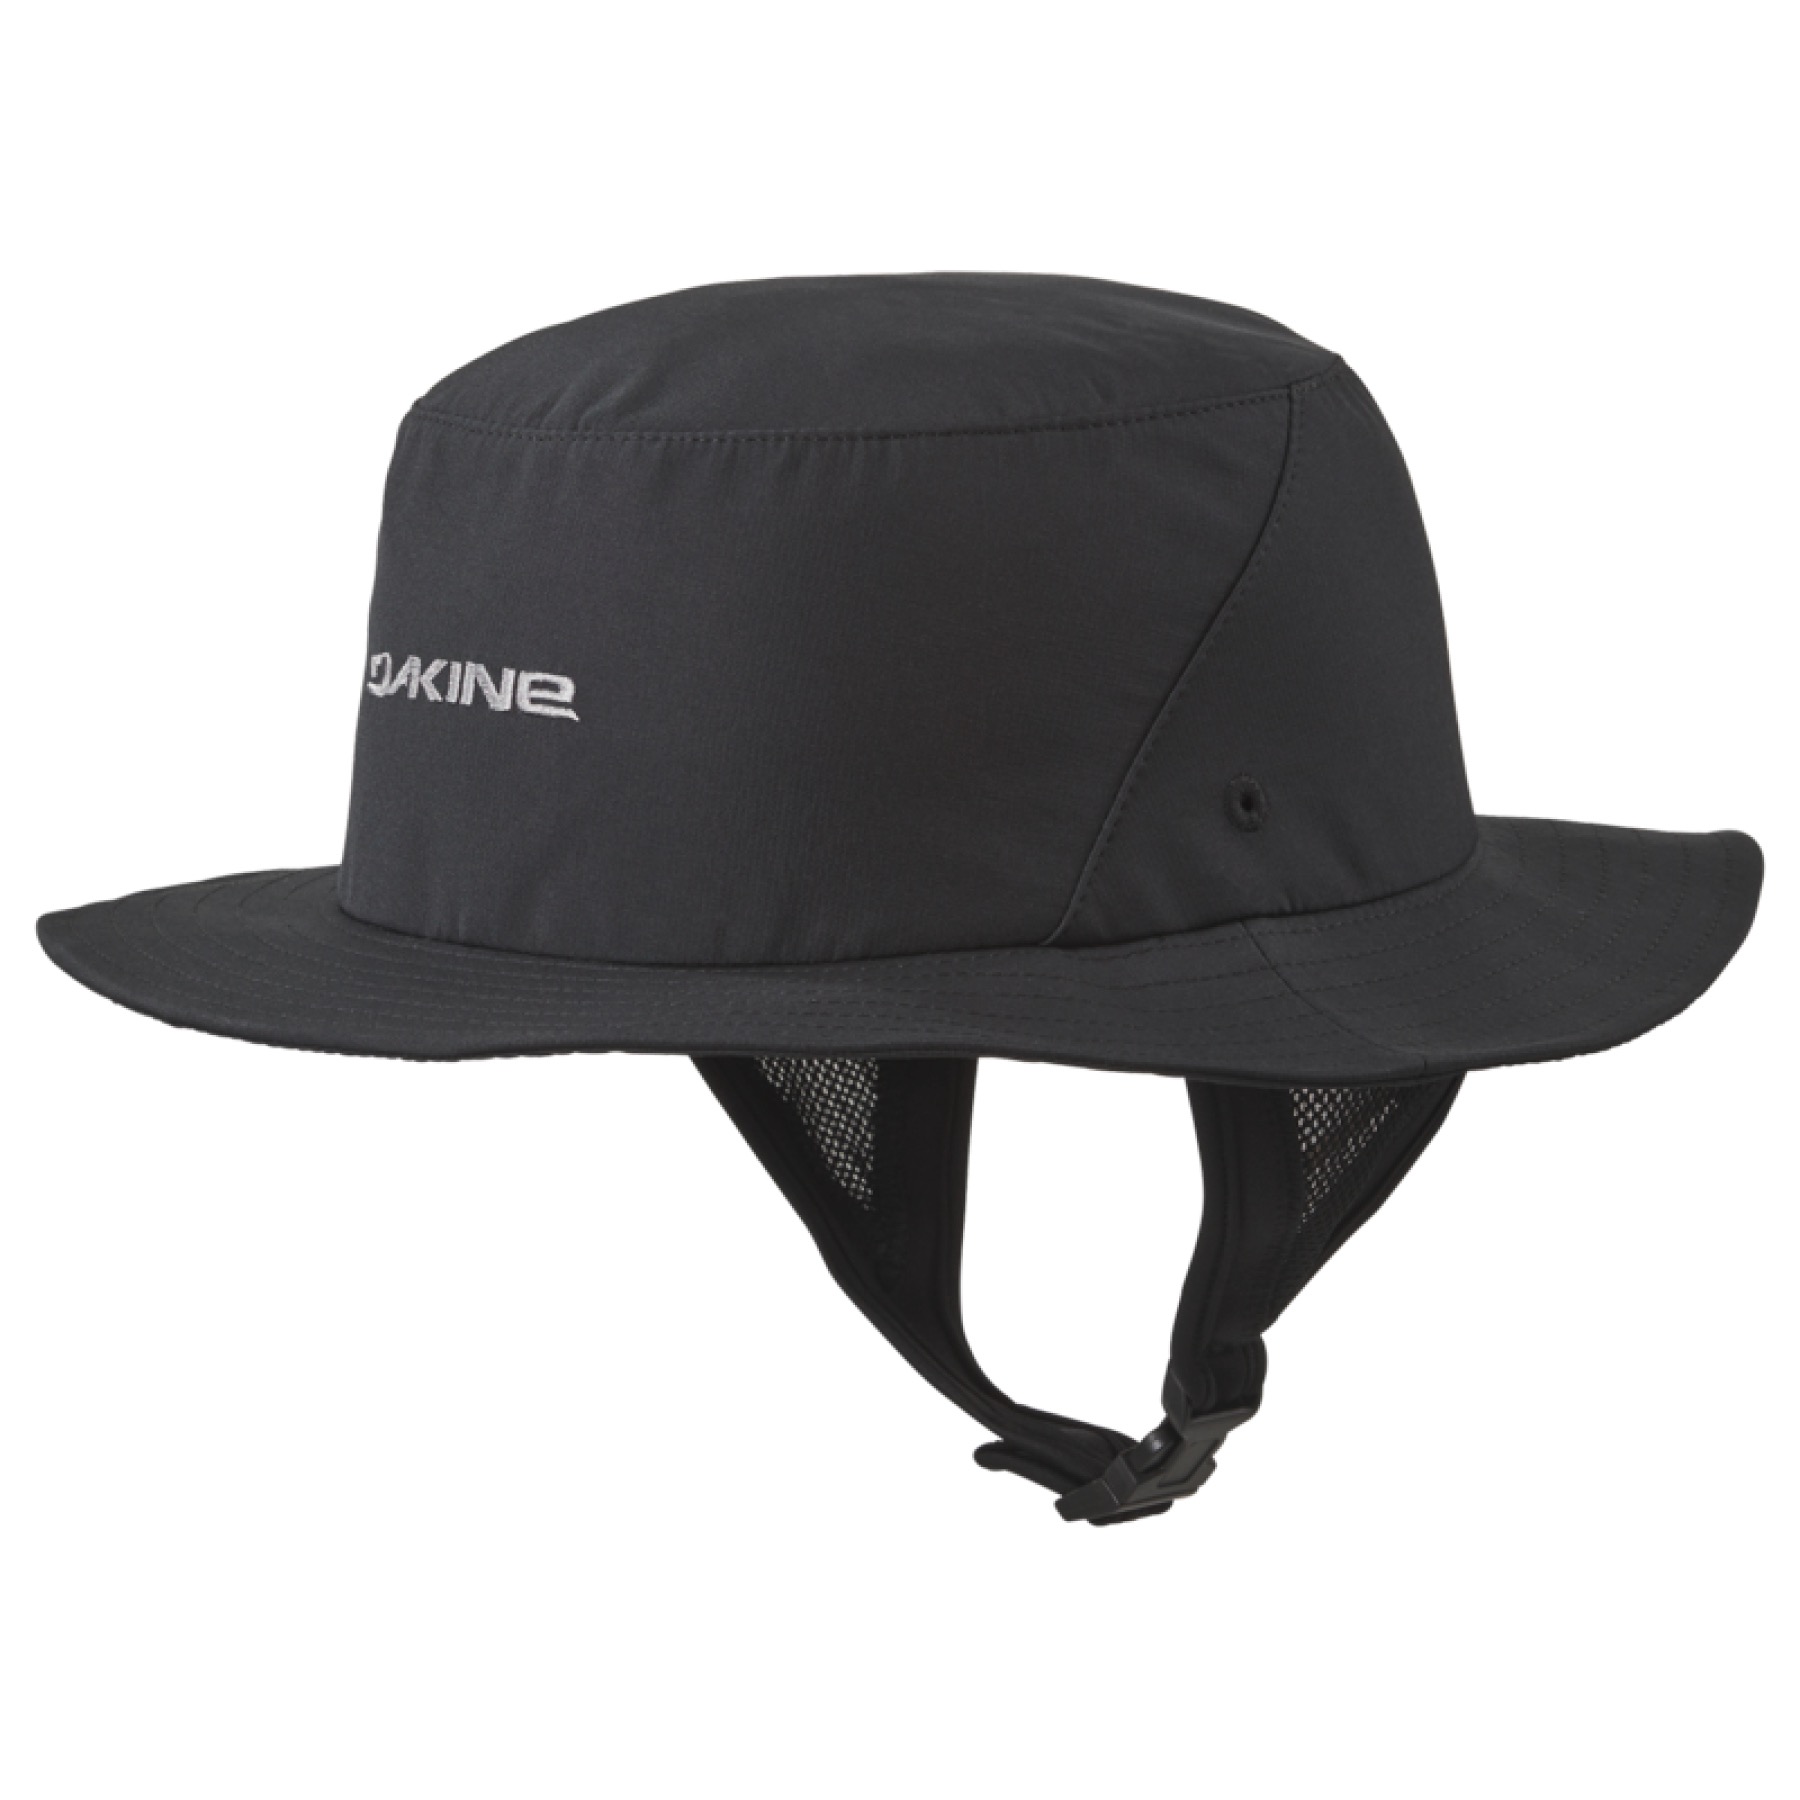 サーフハット 24 DAKINE ダカイン INDO SURF HAT 帽子 UVカット UPF50+ 調整可能 取り外し サーフィン マリンスポーツ  ユニセックス 品番 BE231-914 日本正規品